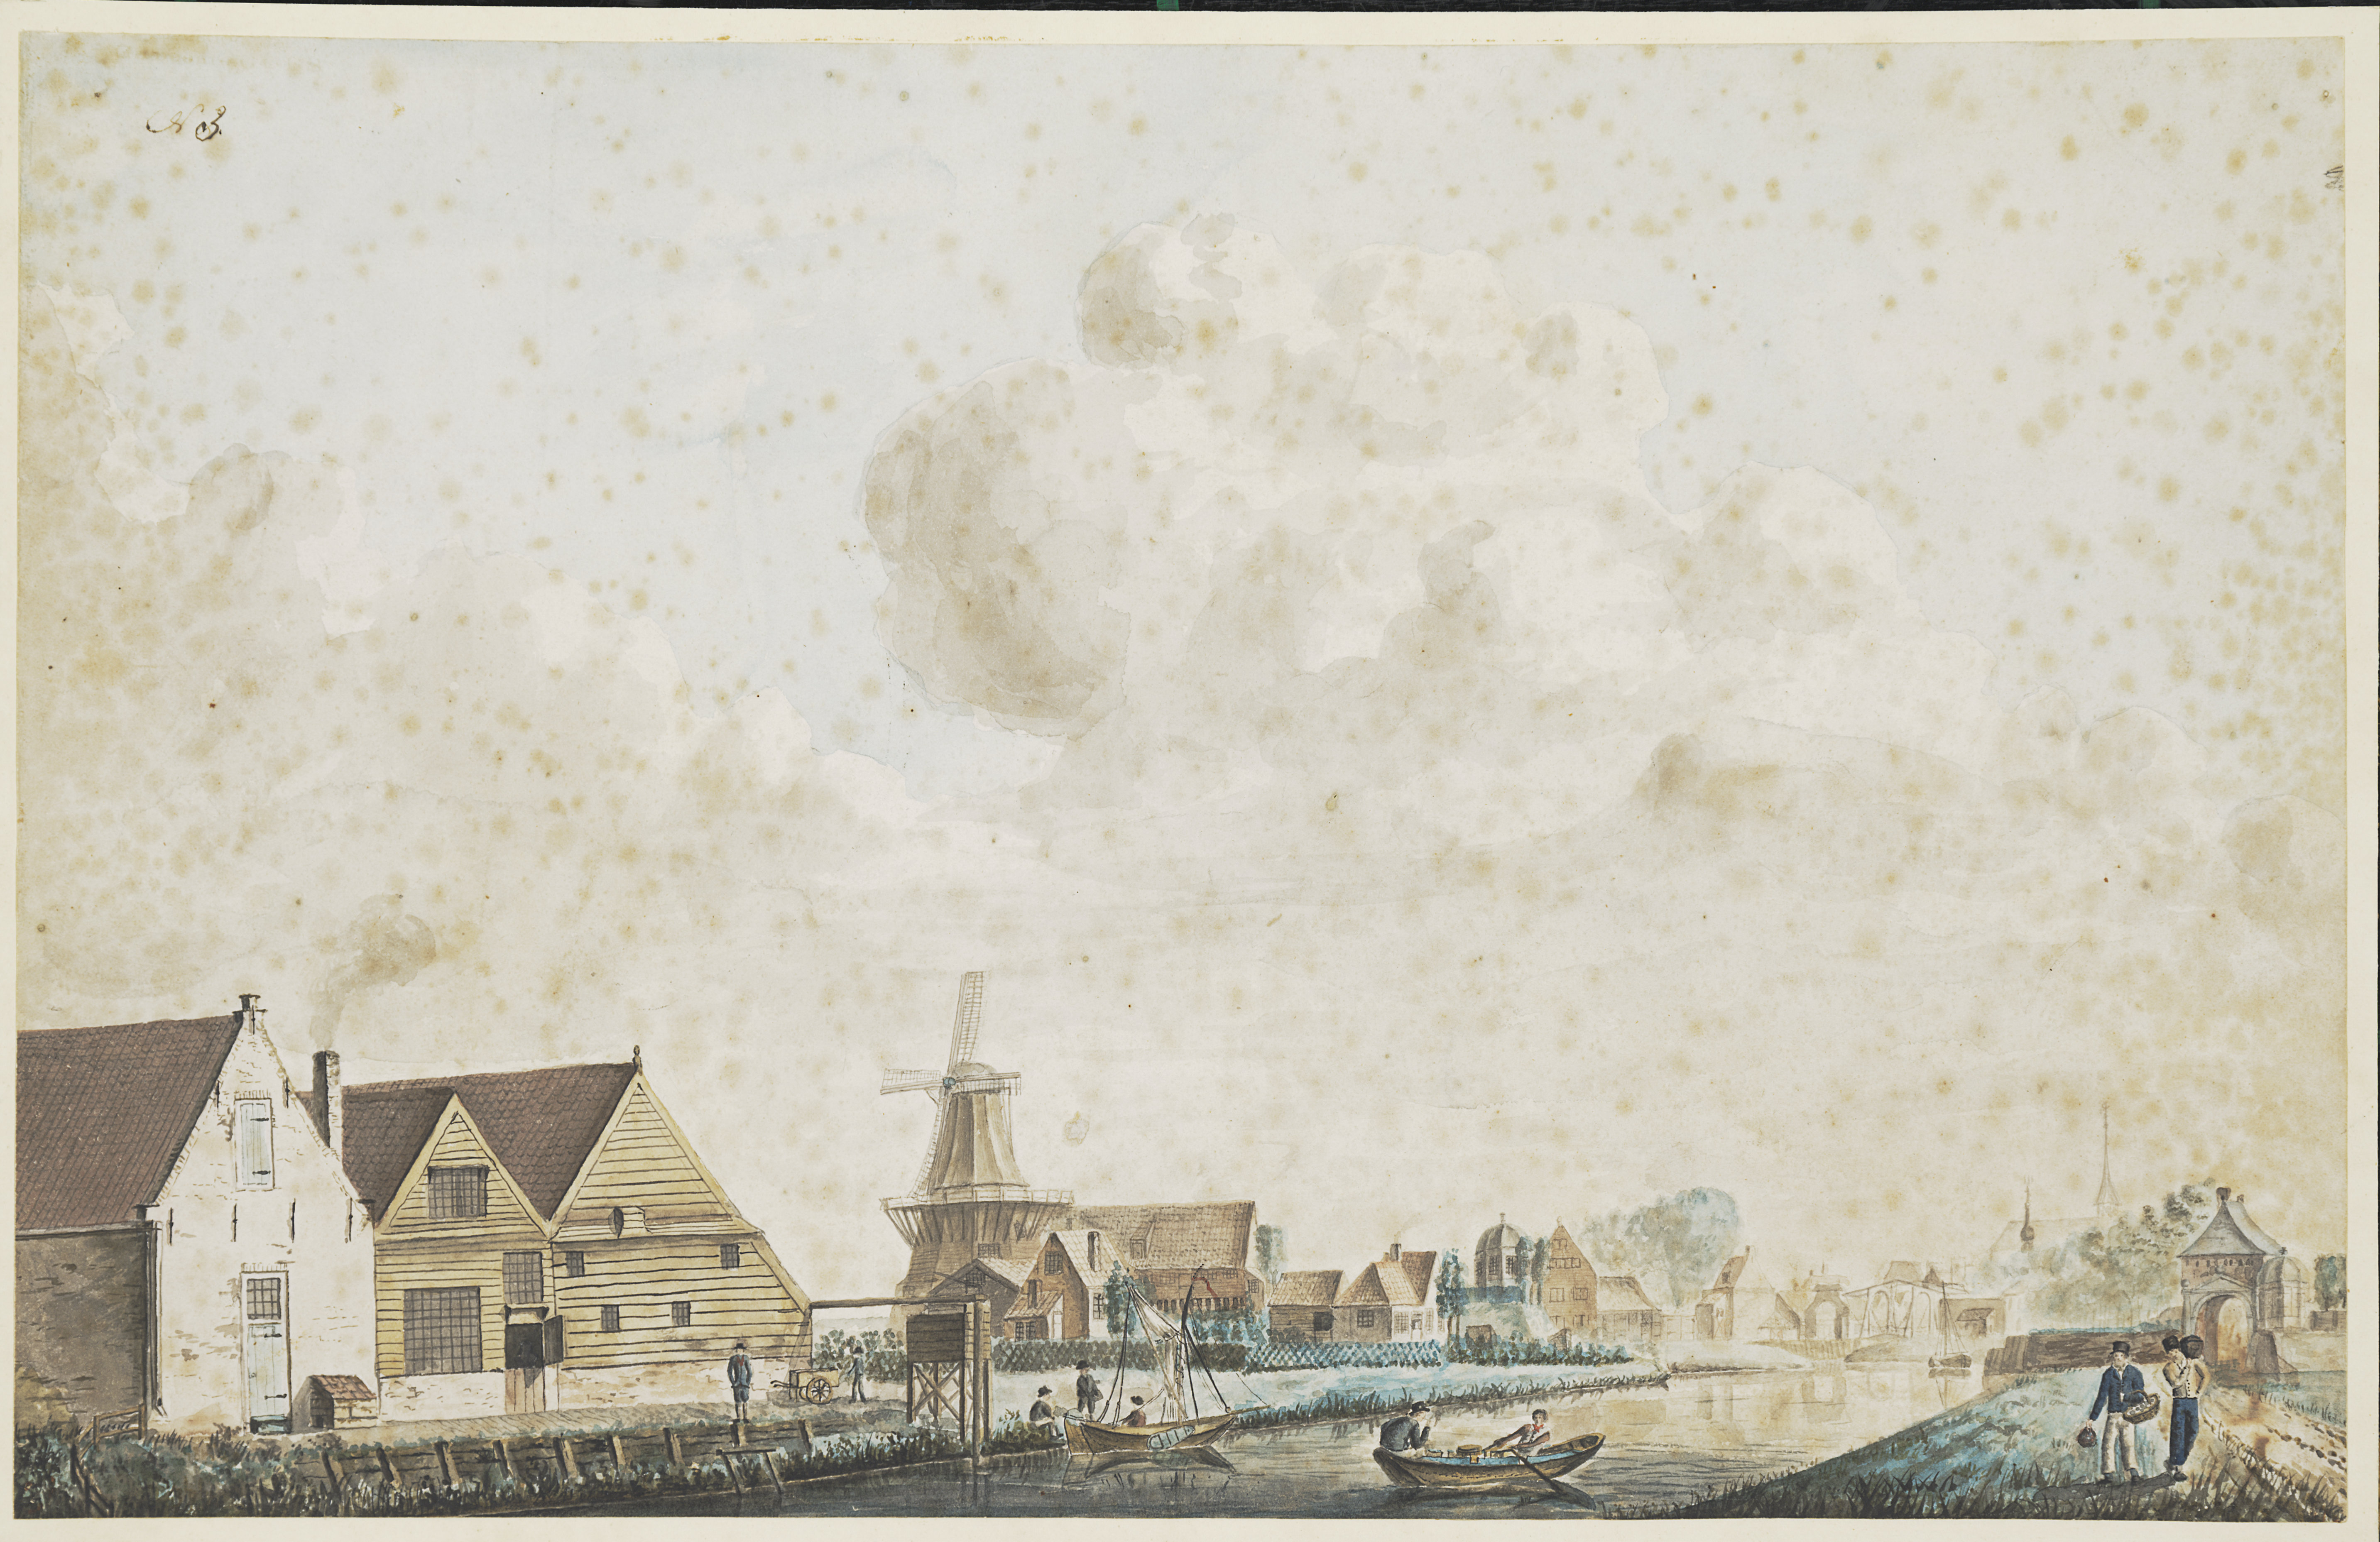 Havenzicht, 1826, G. Braam. HMDB.